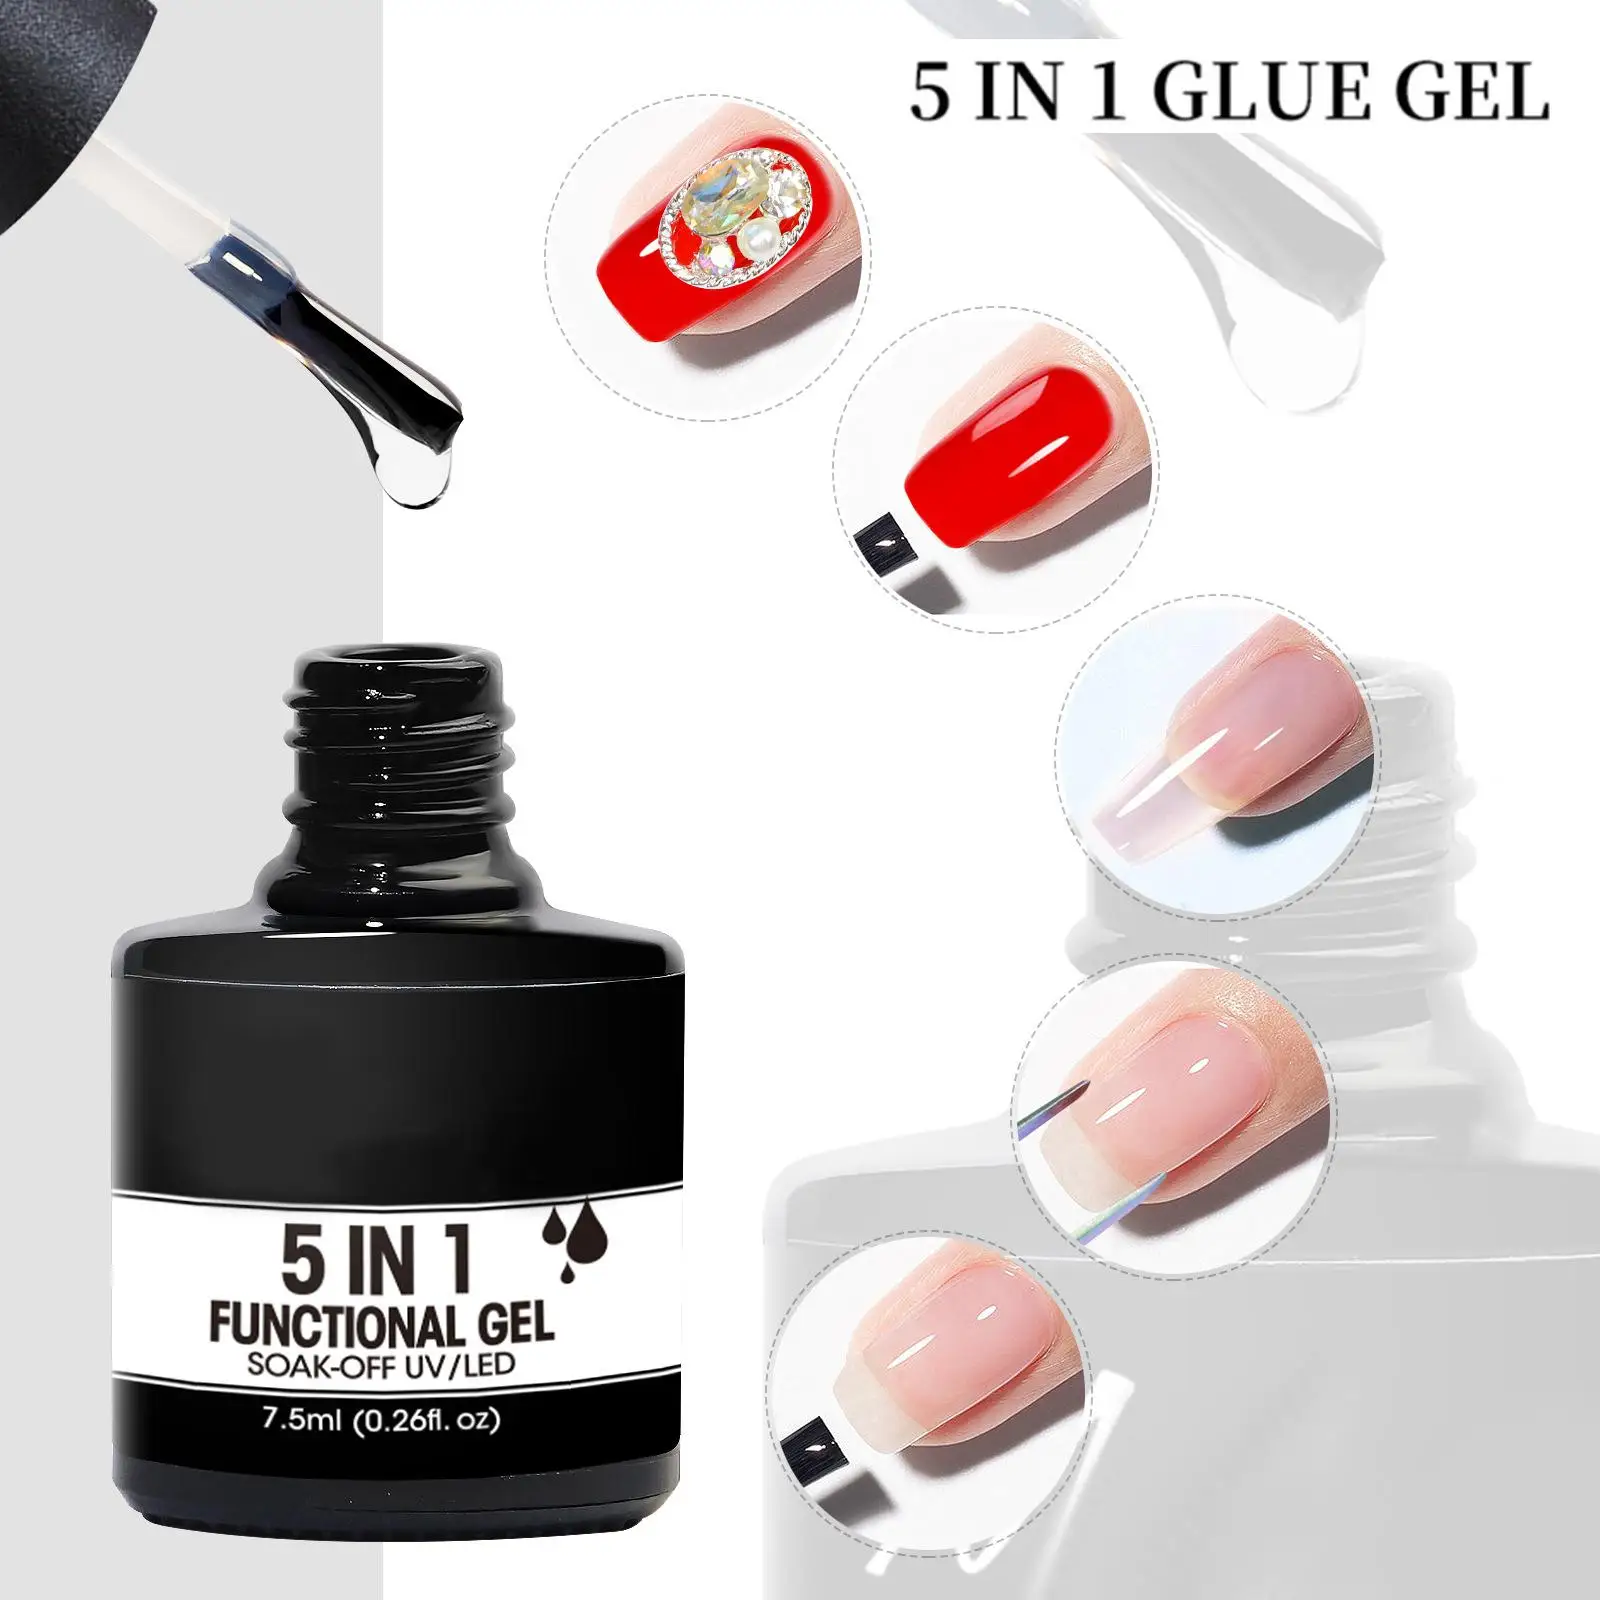 5 in 1 Nail Gel Soak Off UV Gel Strengthener Gel Broken Nails Repair Nail Reinforcement Nail Decoration Hard Base Gel